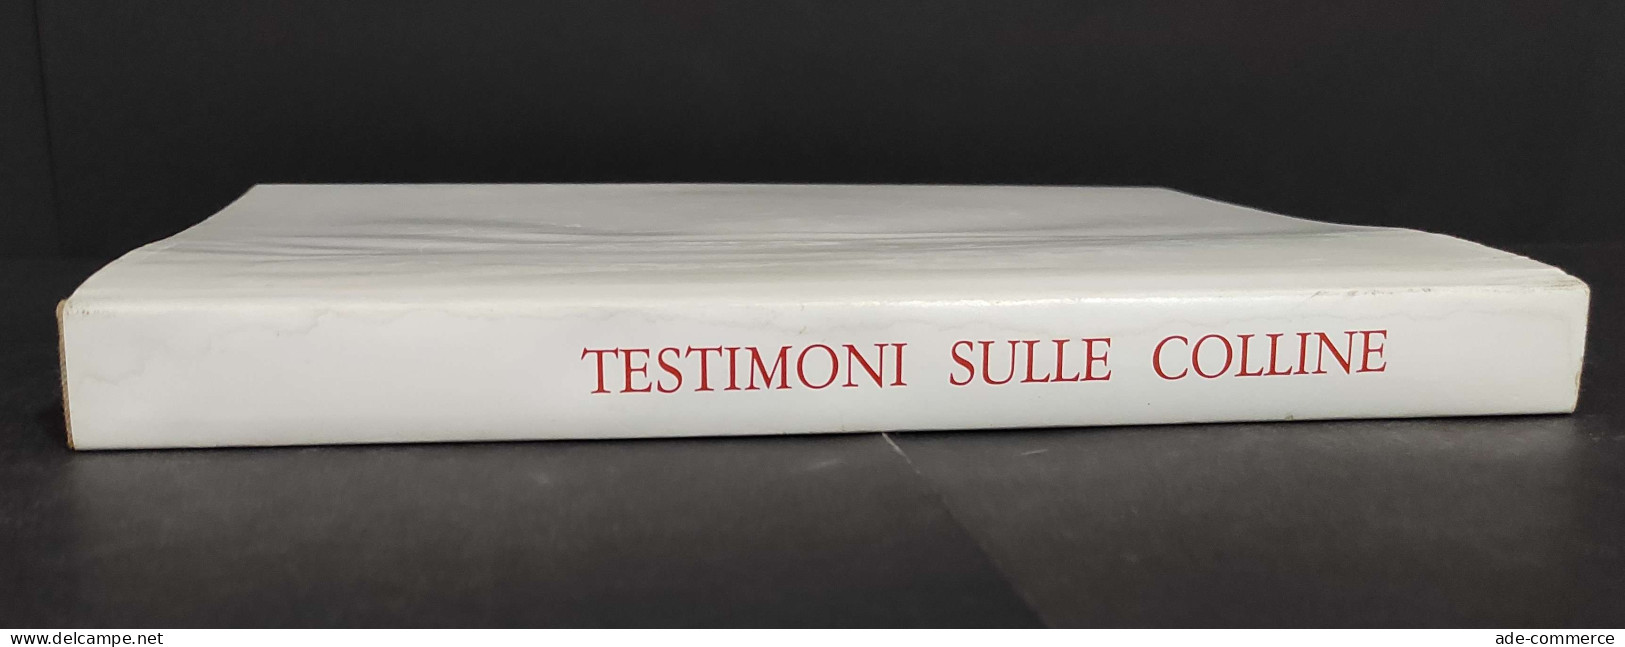 Testimoni Sulle Colline - Testi E Immagini Mendrisotto - Ed. Vignalunga - 1988                                           - Arts, Antiquity